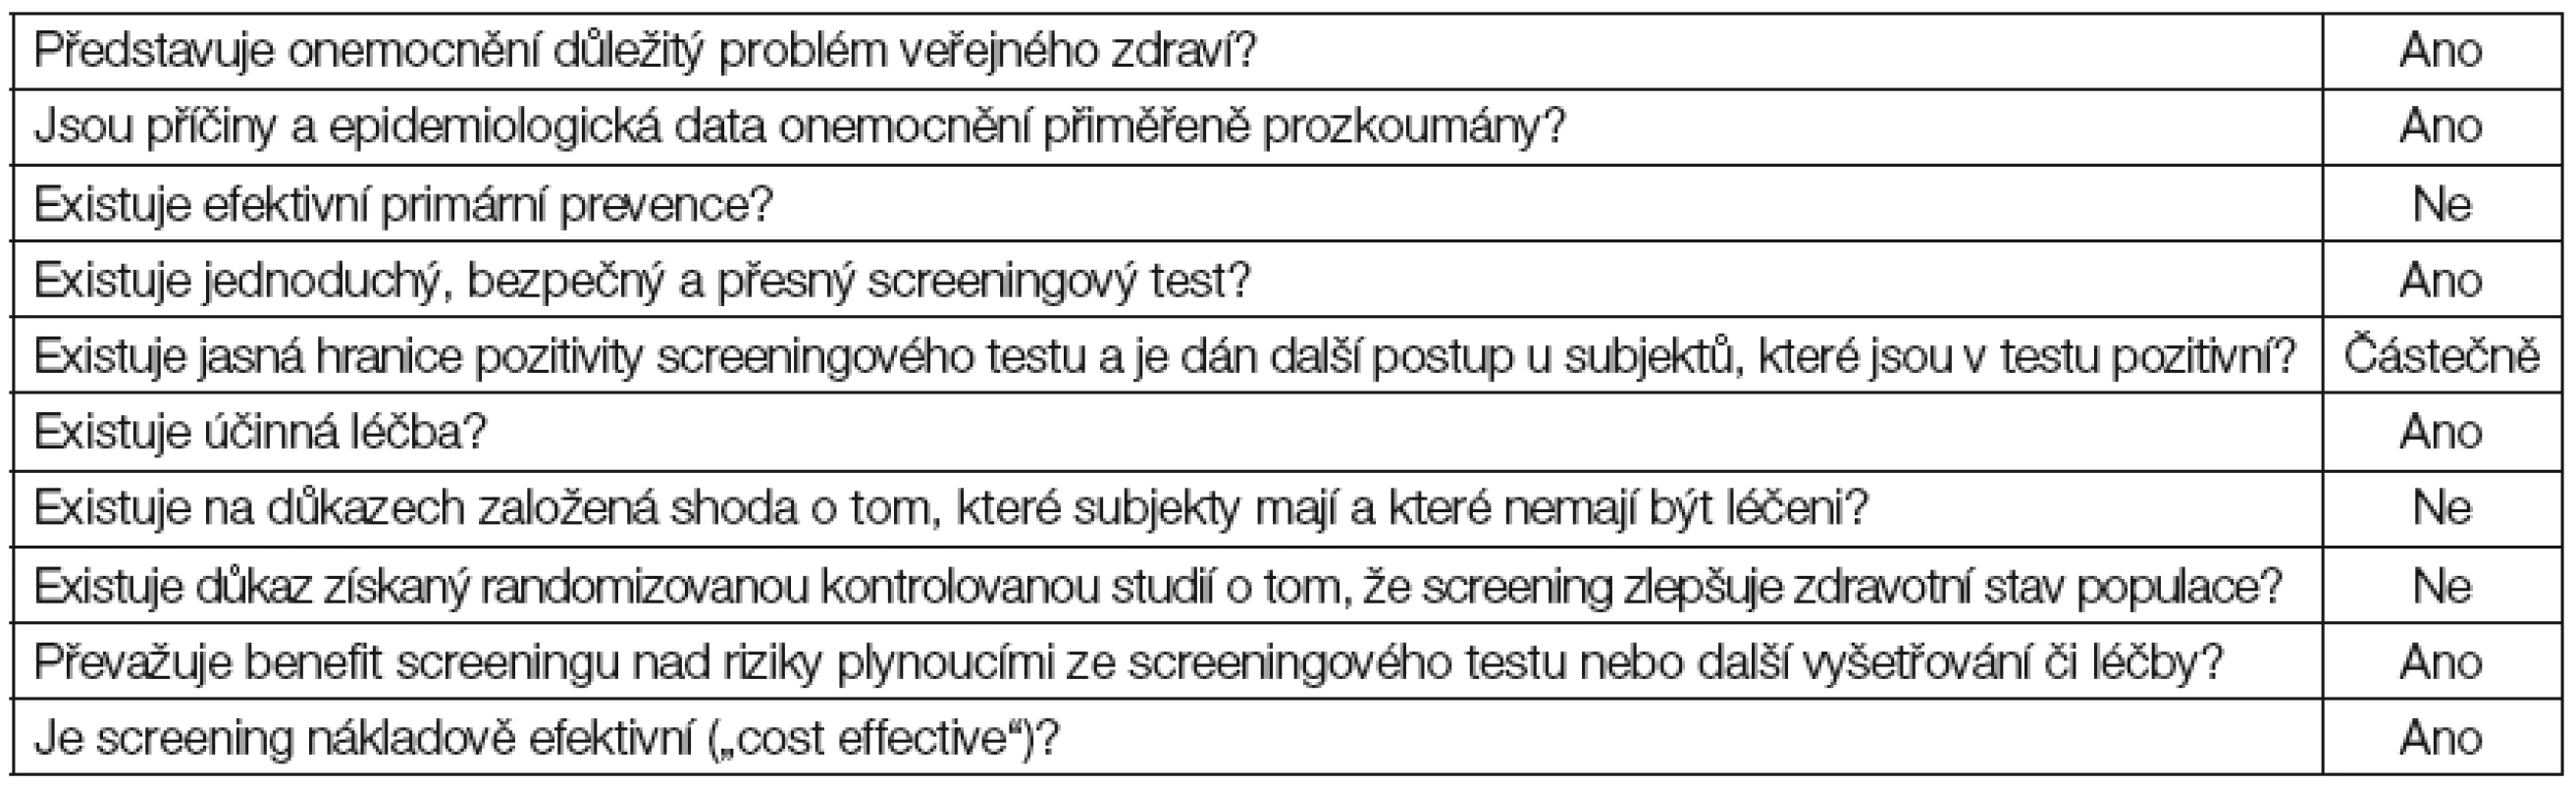 Obecné podmínky pro zavedení univerzálního systematického screeningu, které jsou/nejsou splněny (upraveno podle [71])